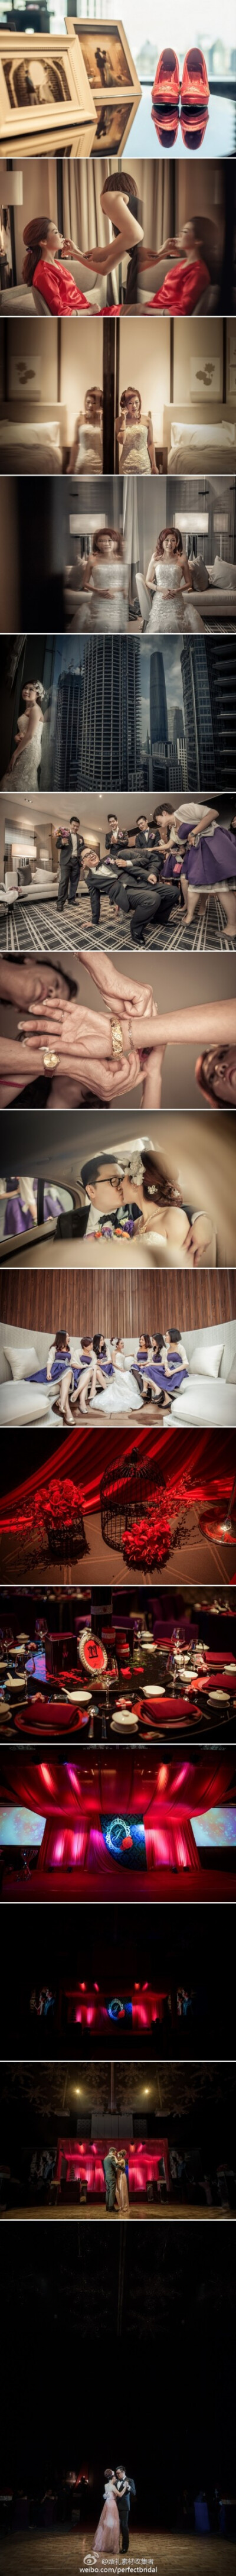 【国内首家W酒店的第一场婚礼】国内首家W酒店的第一场婚礼,广州新娘也是W酒店集团里面的室内设计师,而台湾新郎则是酒店建筑师,两人是实实在在的夫妻档